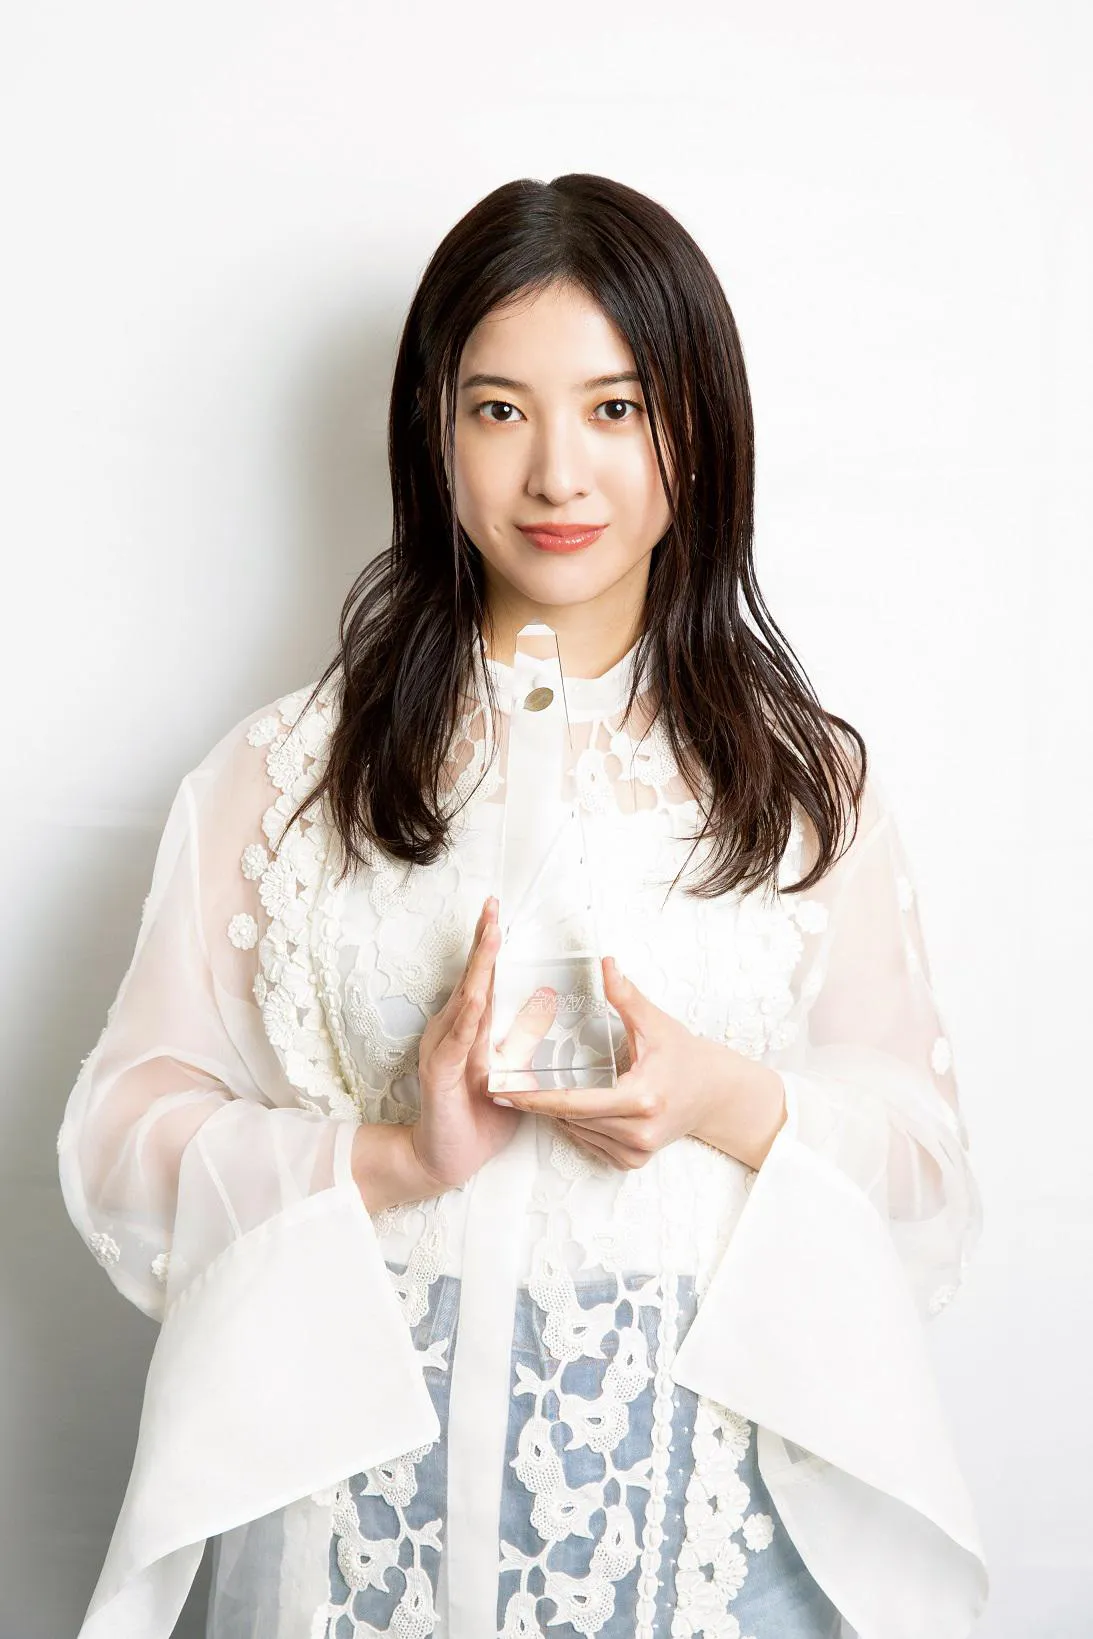 第110回ドラマアカデミー賞で主演女優賞を受賞した吉高由里子